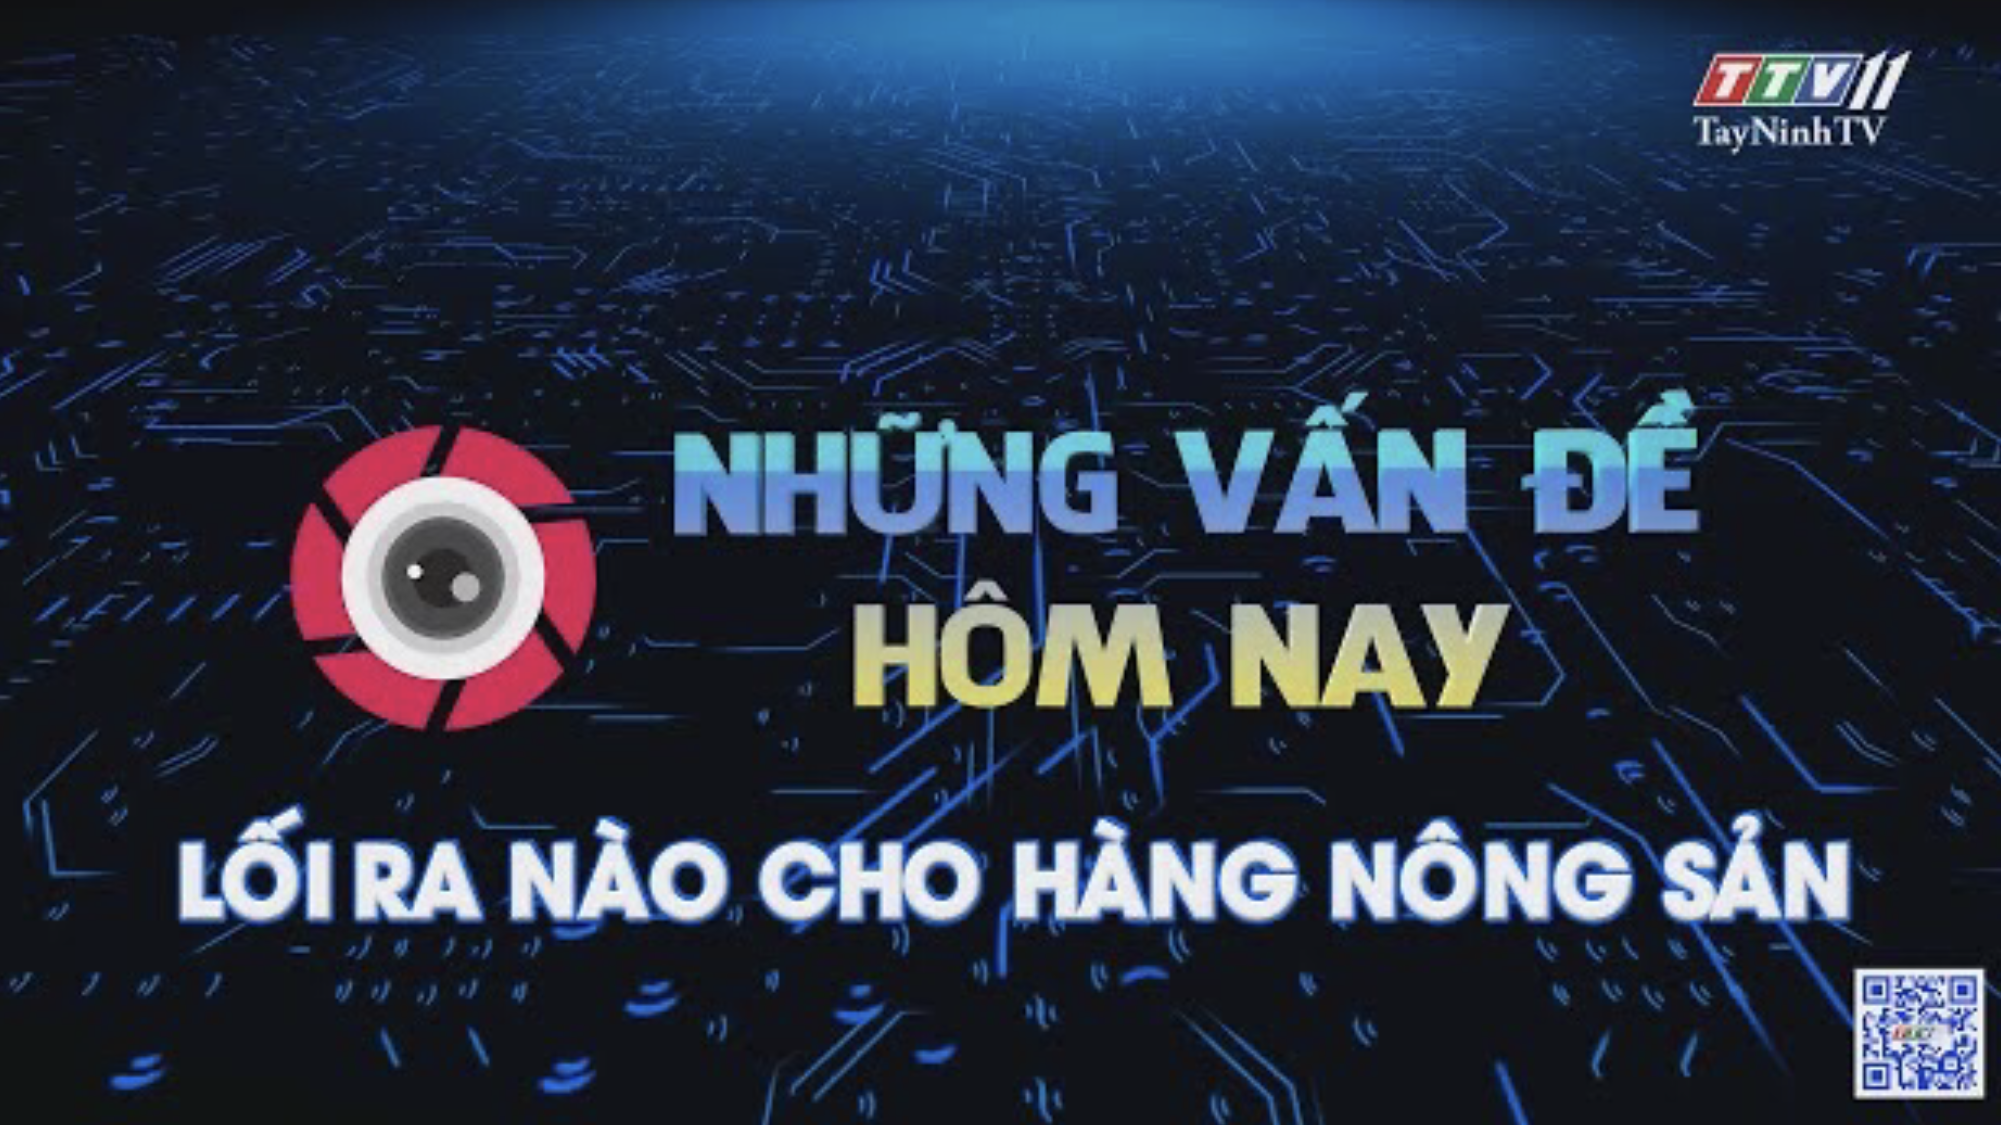 LỐI RA NÀO CHO HÀNG NÔNG SẢN | Những vấn đề hôm nay | TayNinhTV